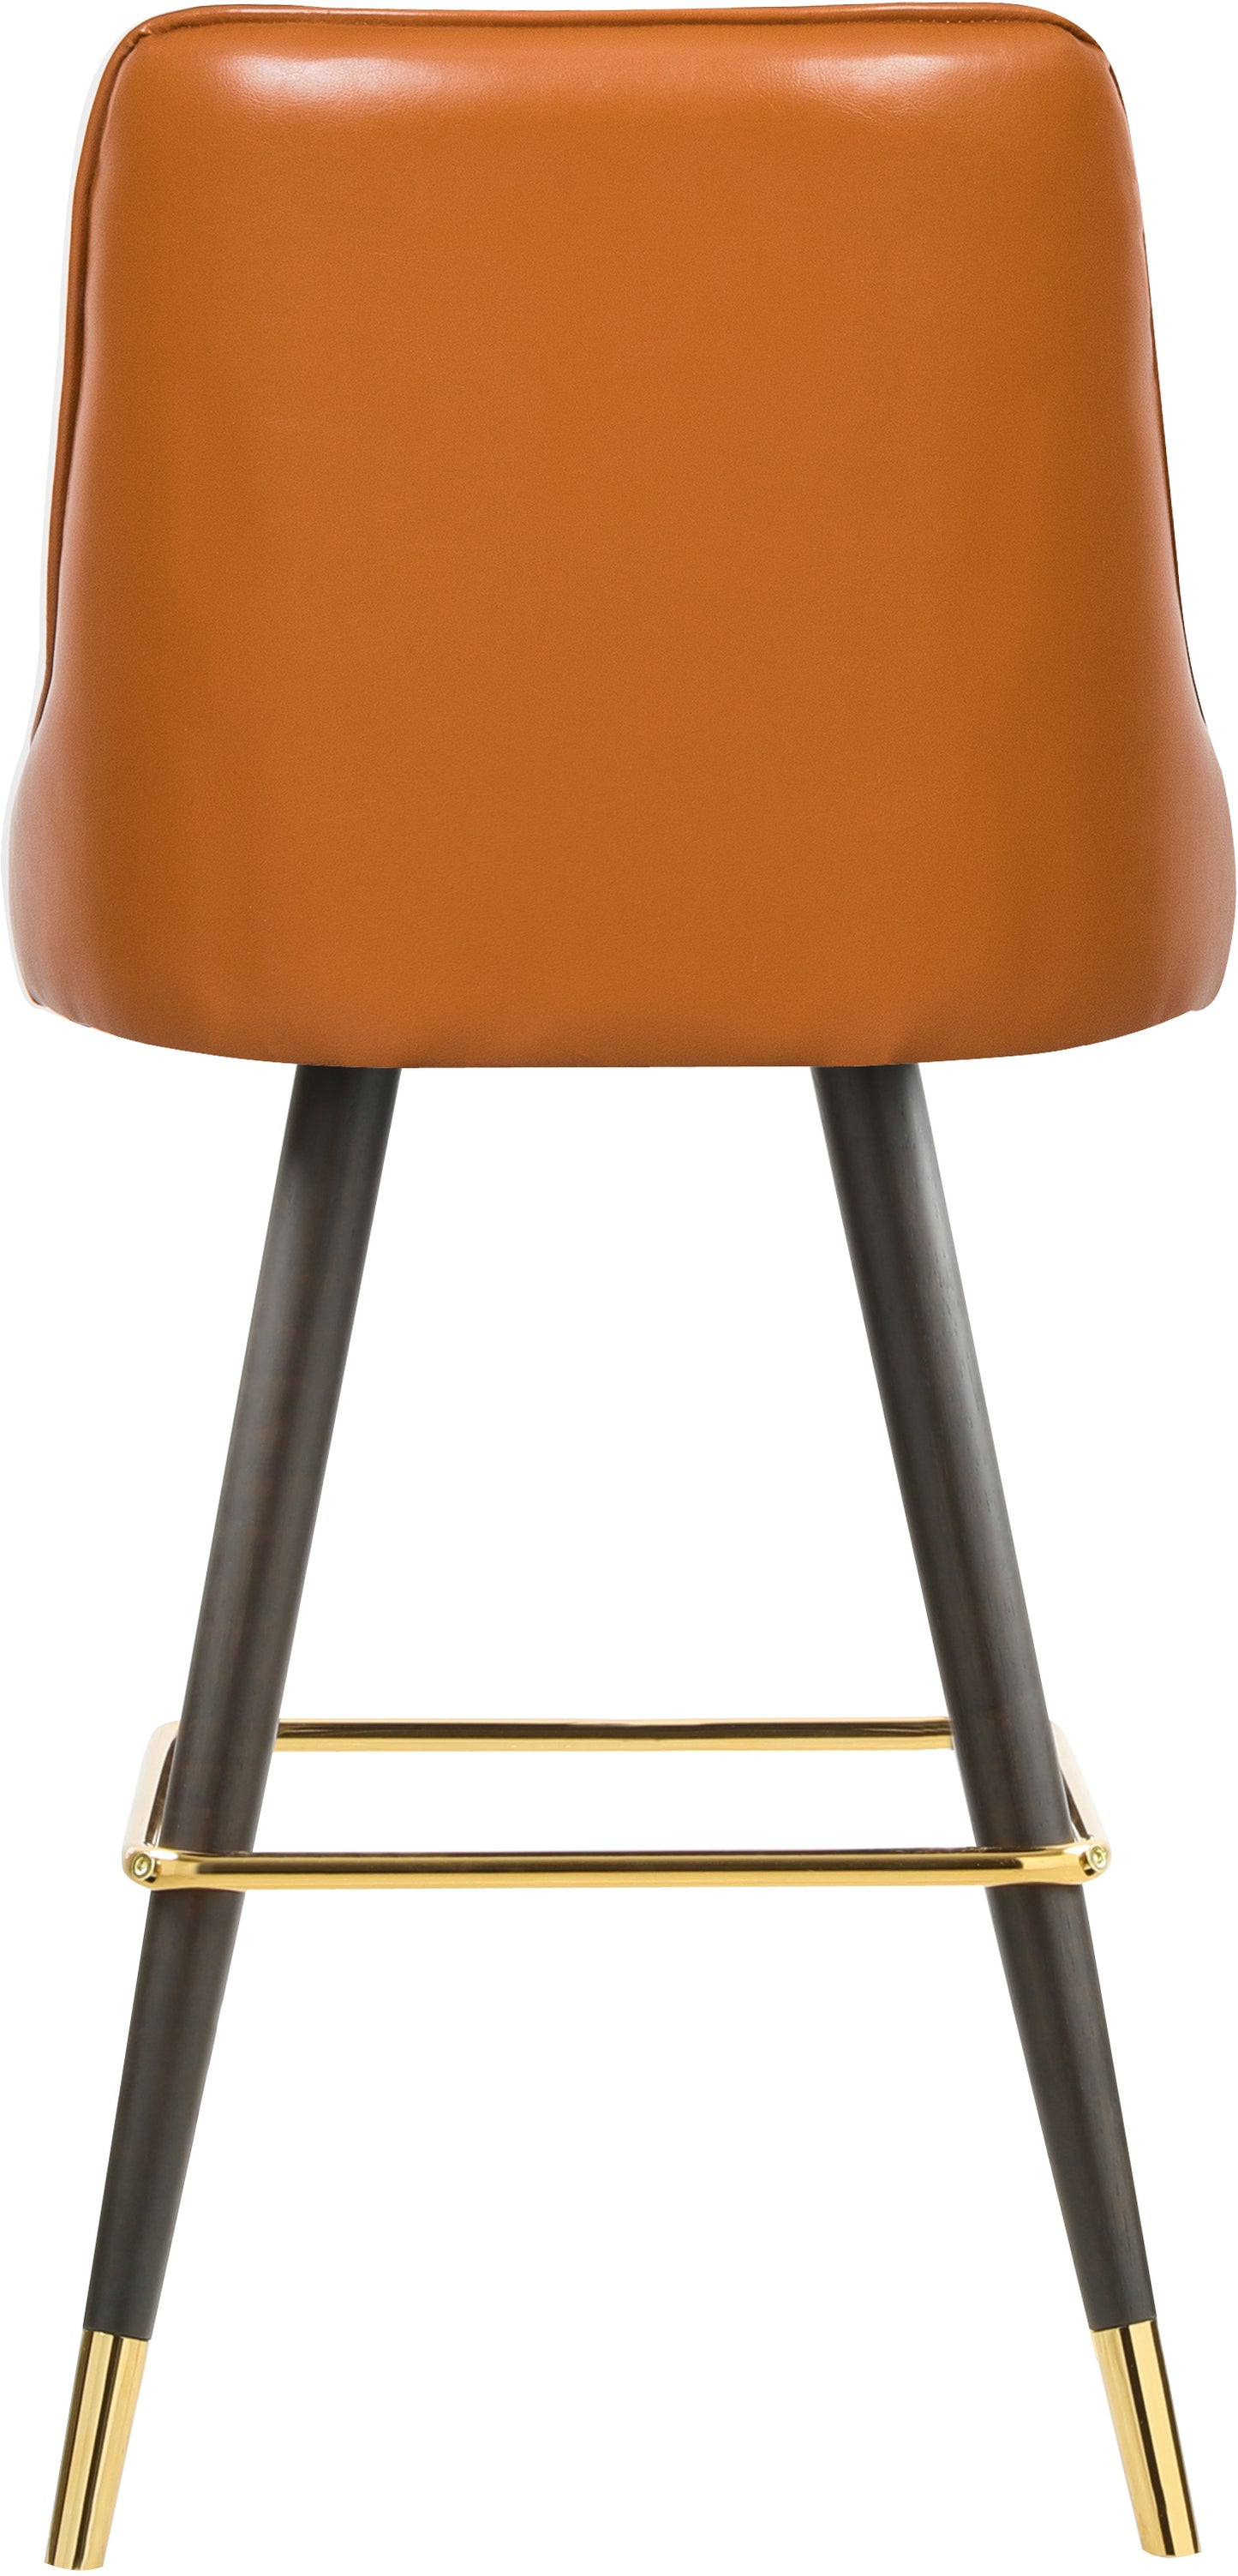 counter/bar stool